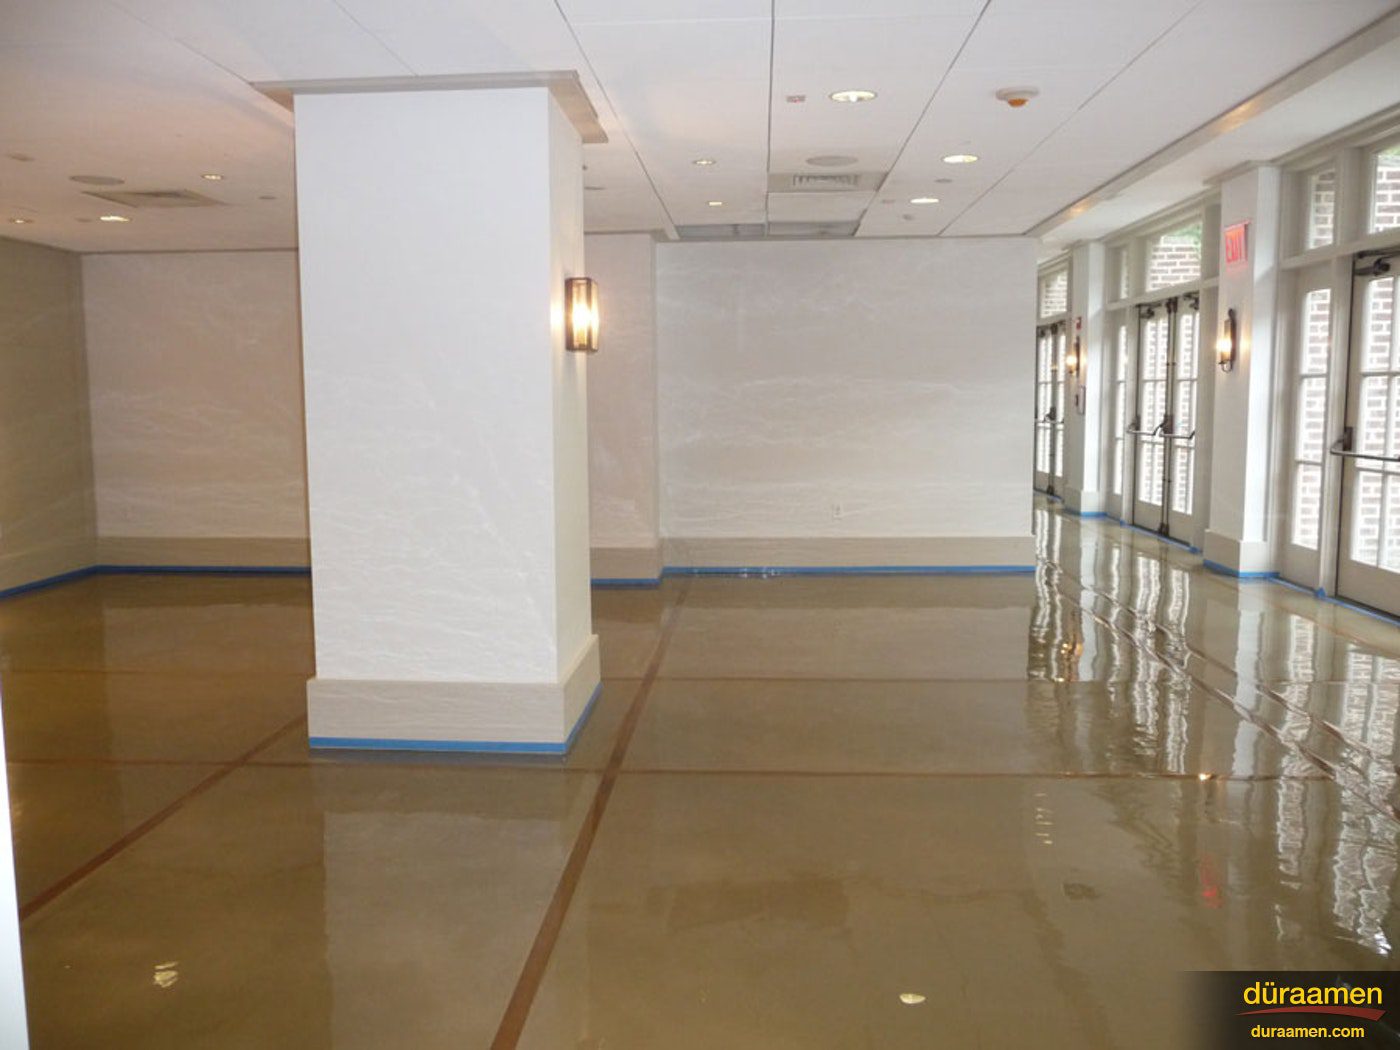 The floor in this wedding hall is Duraamen selfleveling epoxynbspWedding Hall Lobby | Duraamen Engineered Products Inc